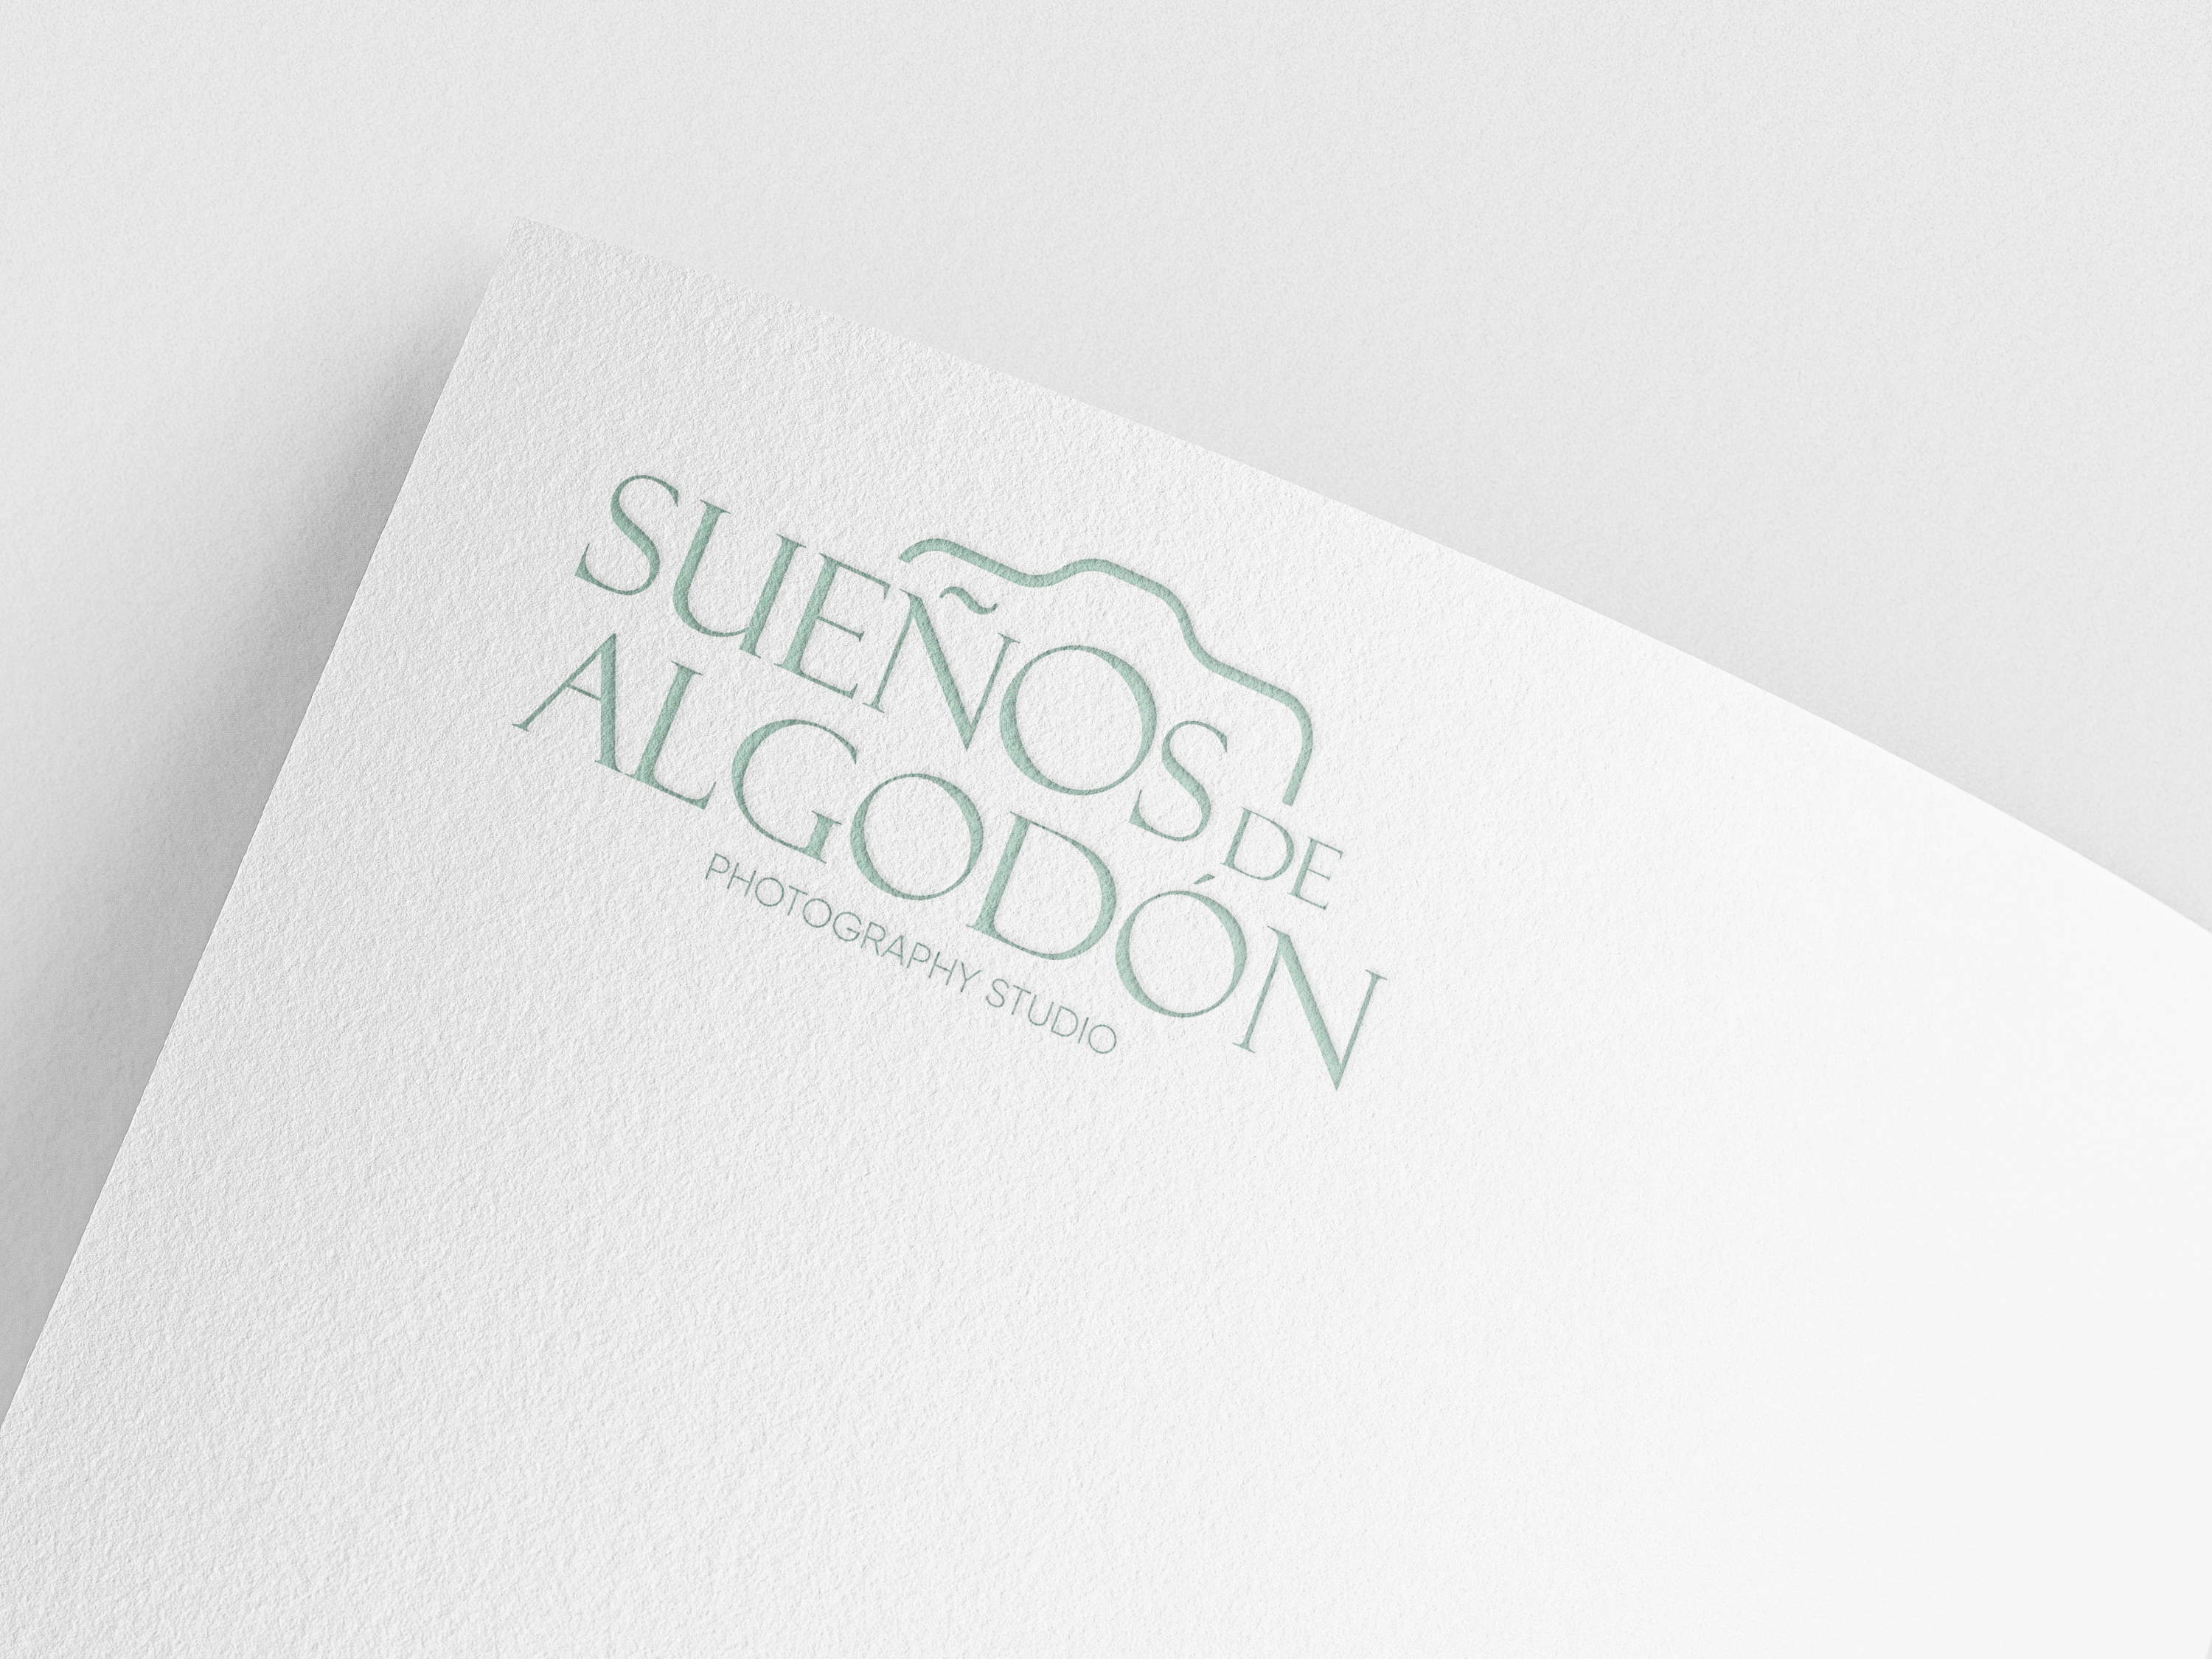 Sueños de Algodón - Brand Design